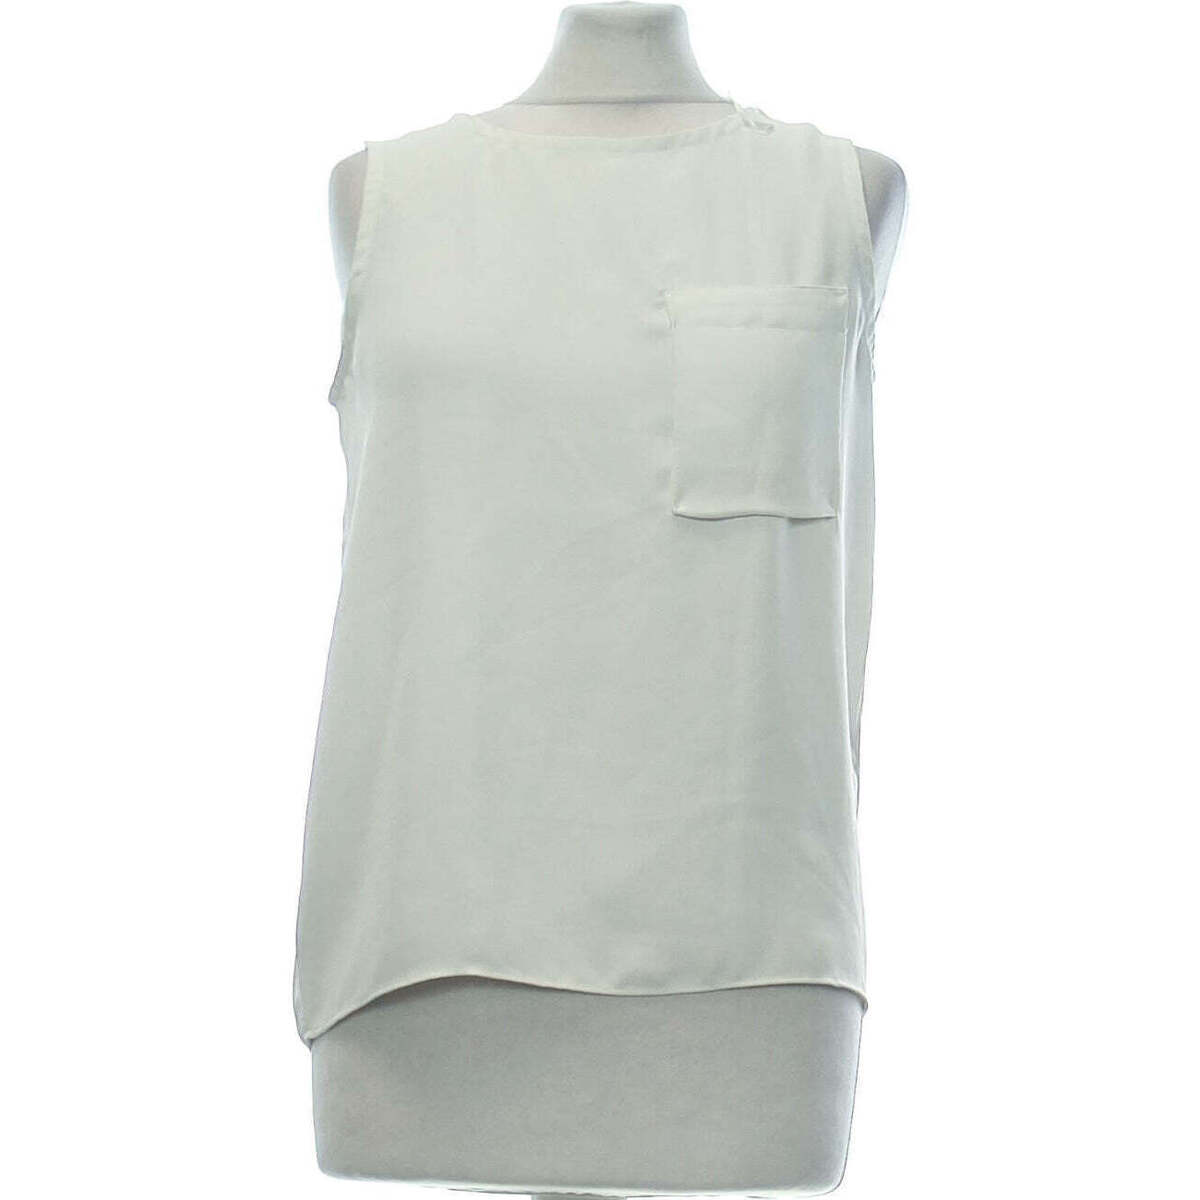 Vêtements Femme T-shirt med broderet hals débardeur  36 - T1 - S Blanc Blanc